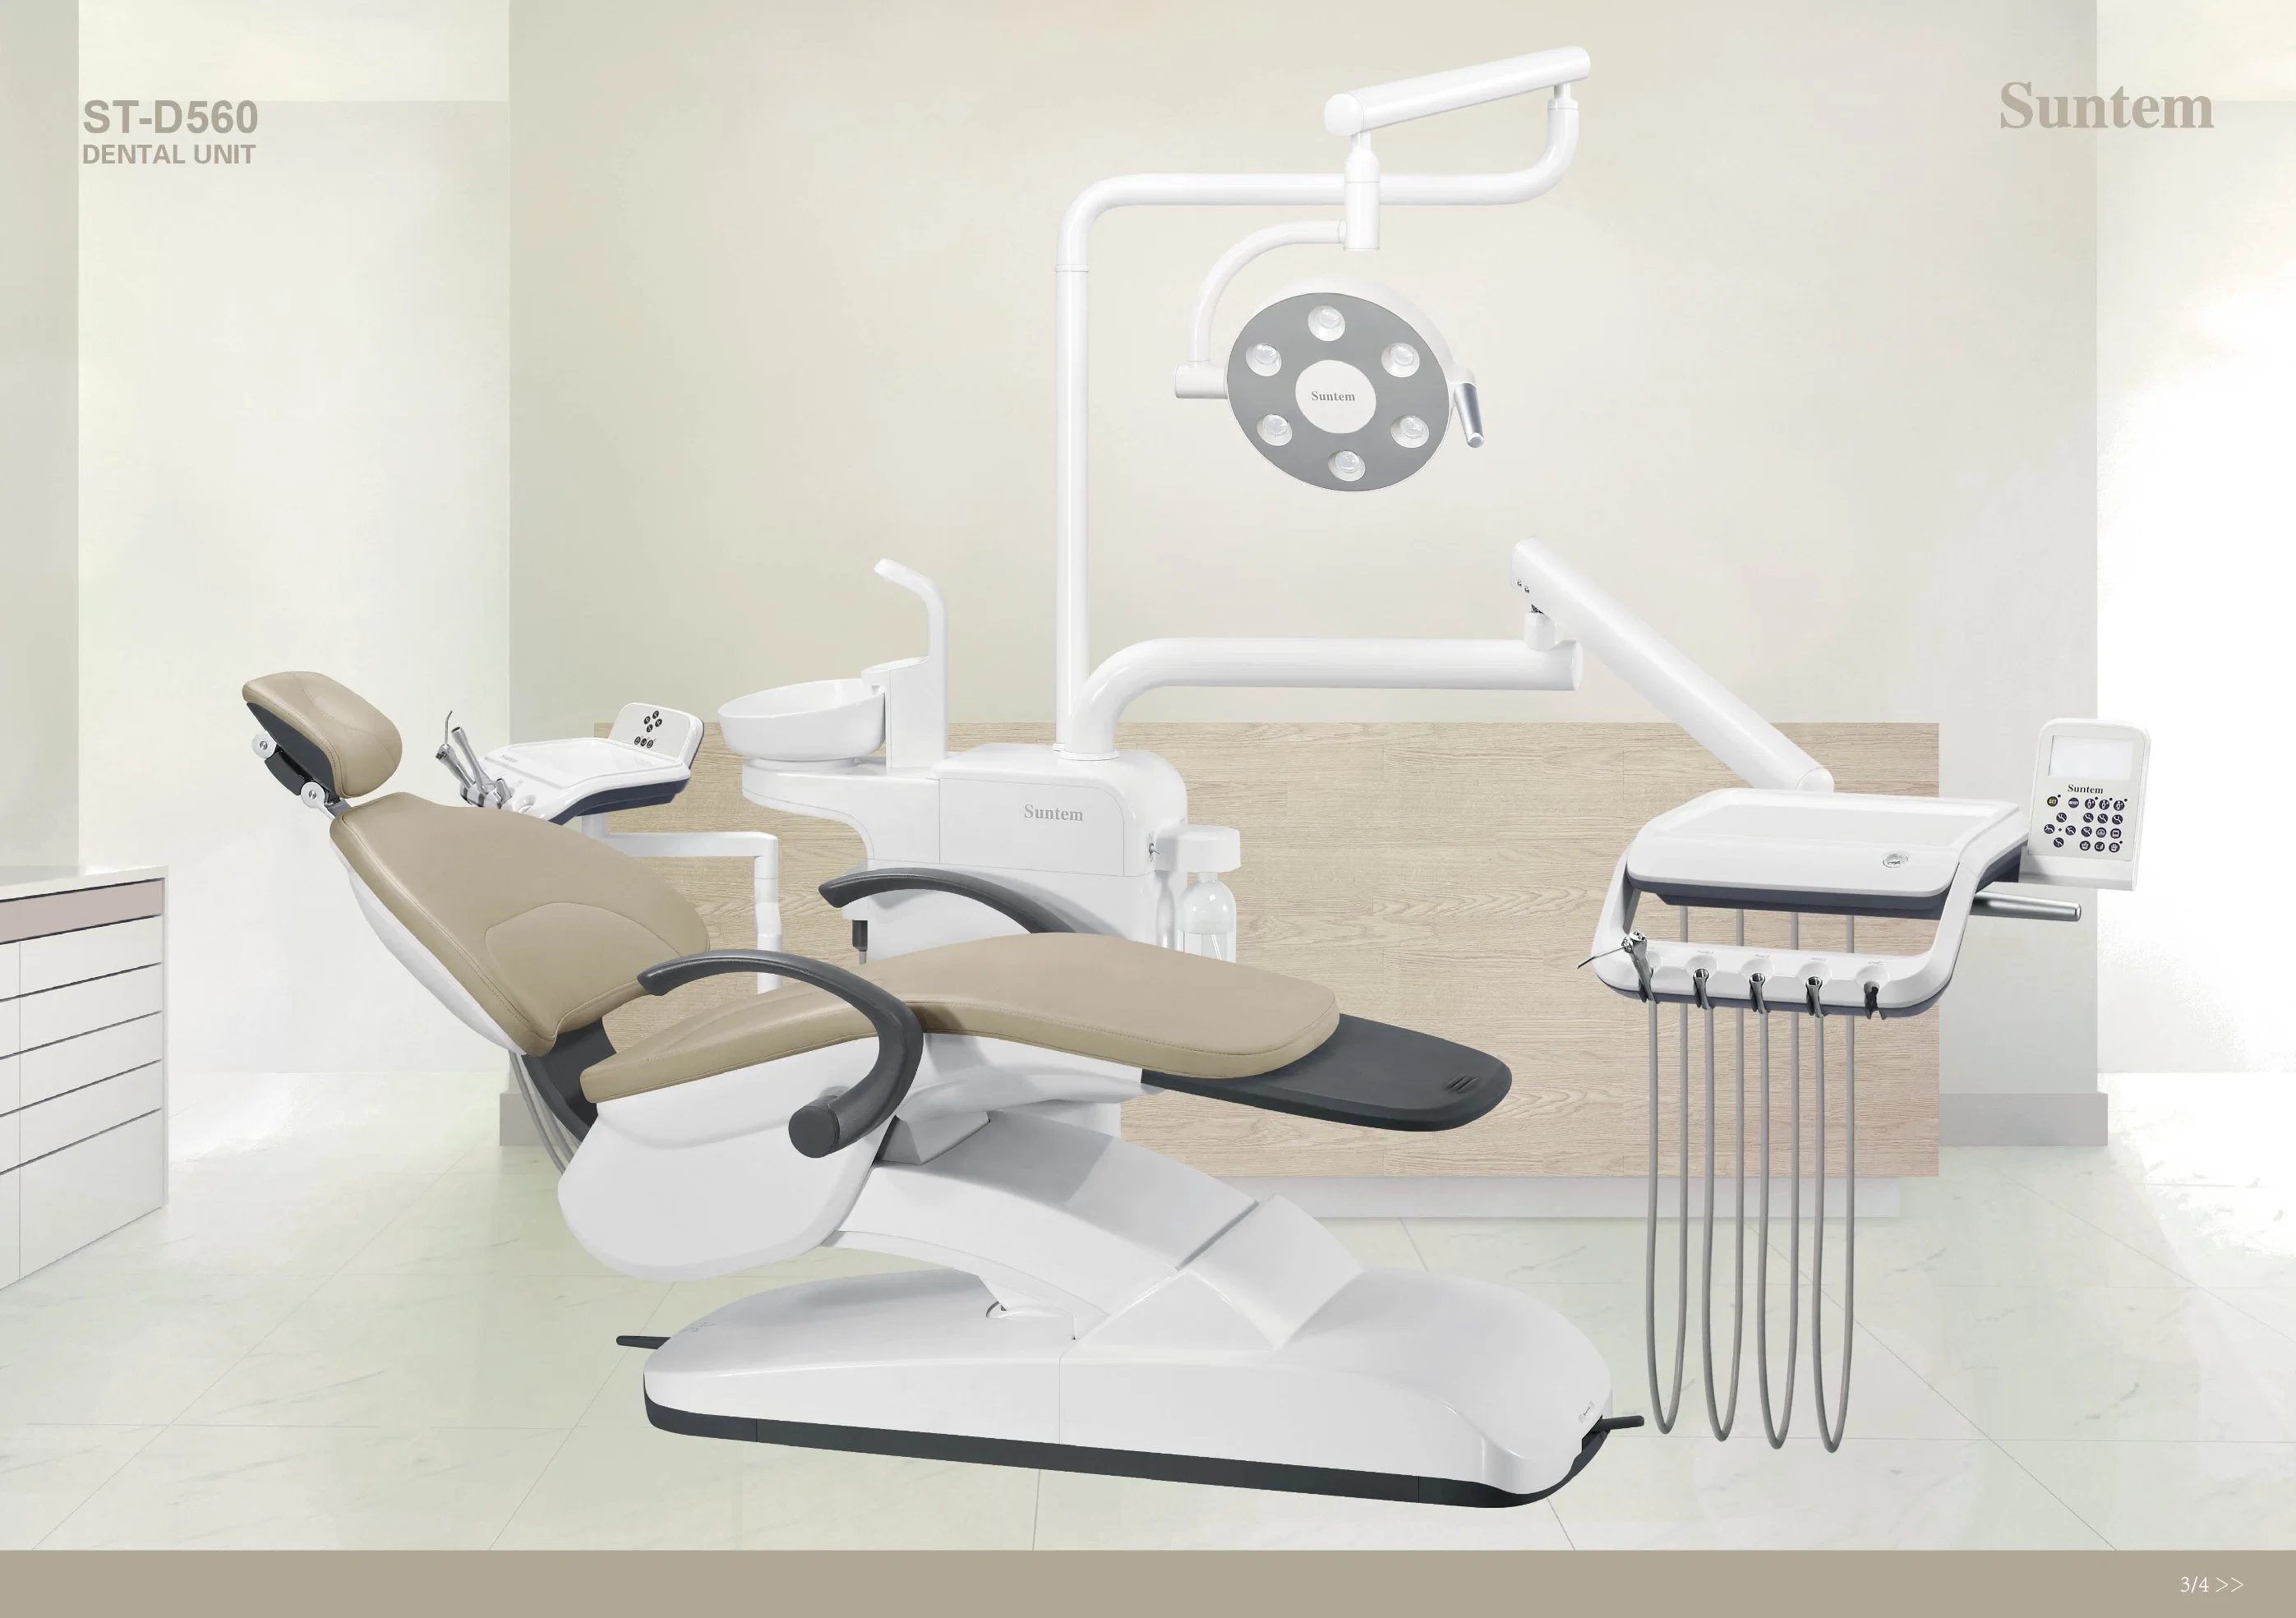 Suntem Dental Unit St-D560 مع اعتماد التصميم الأوروبي/كرسي الأسنان/منخفض التركيب/الأمان/الفك CE